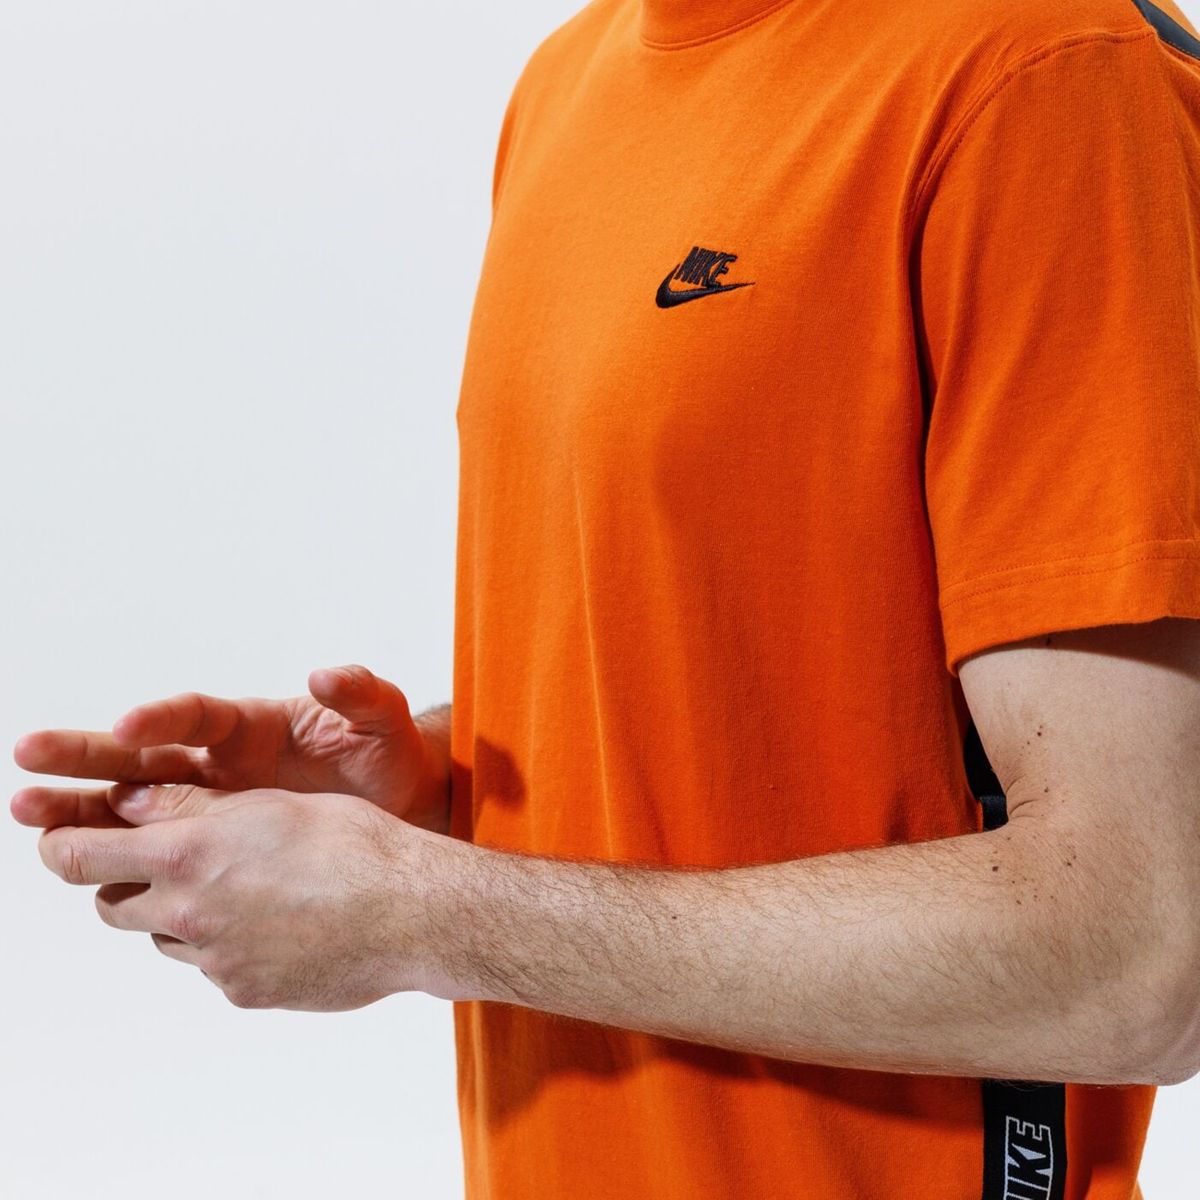 CZ9950 - T-Shirt e Polo - Nike